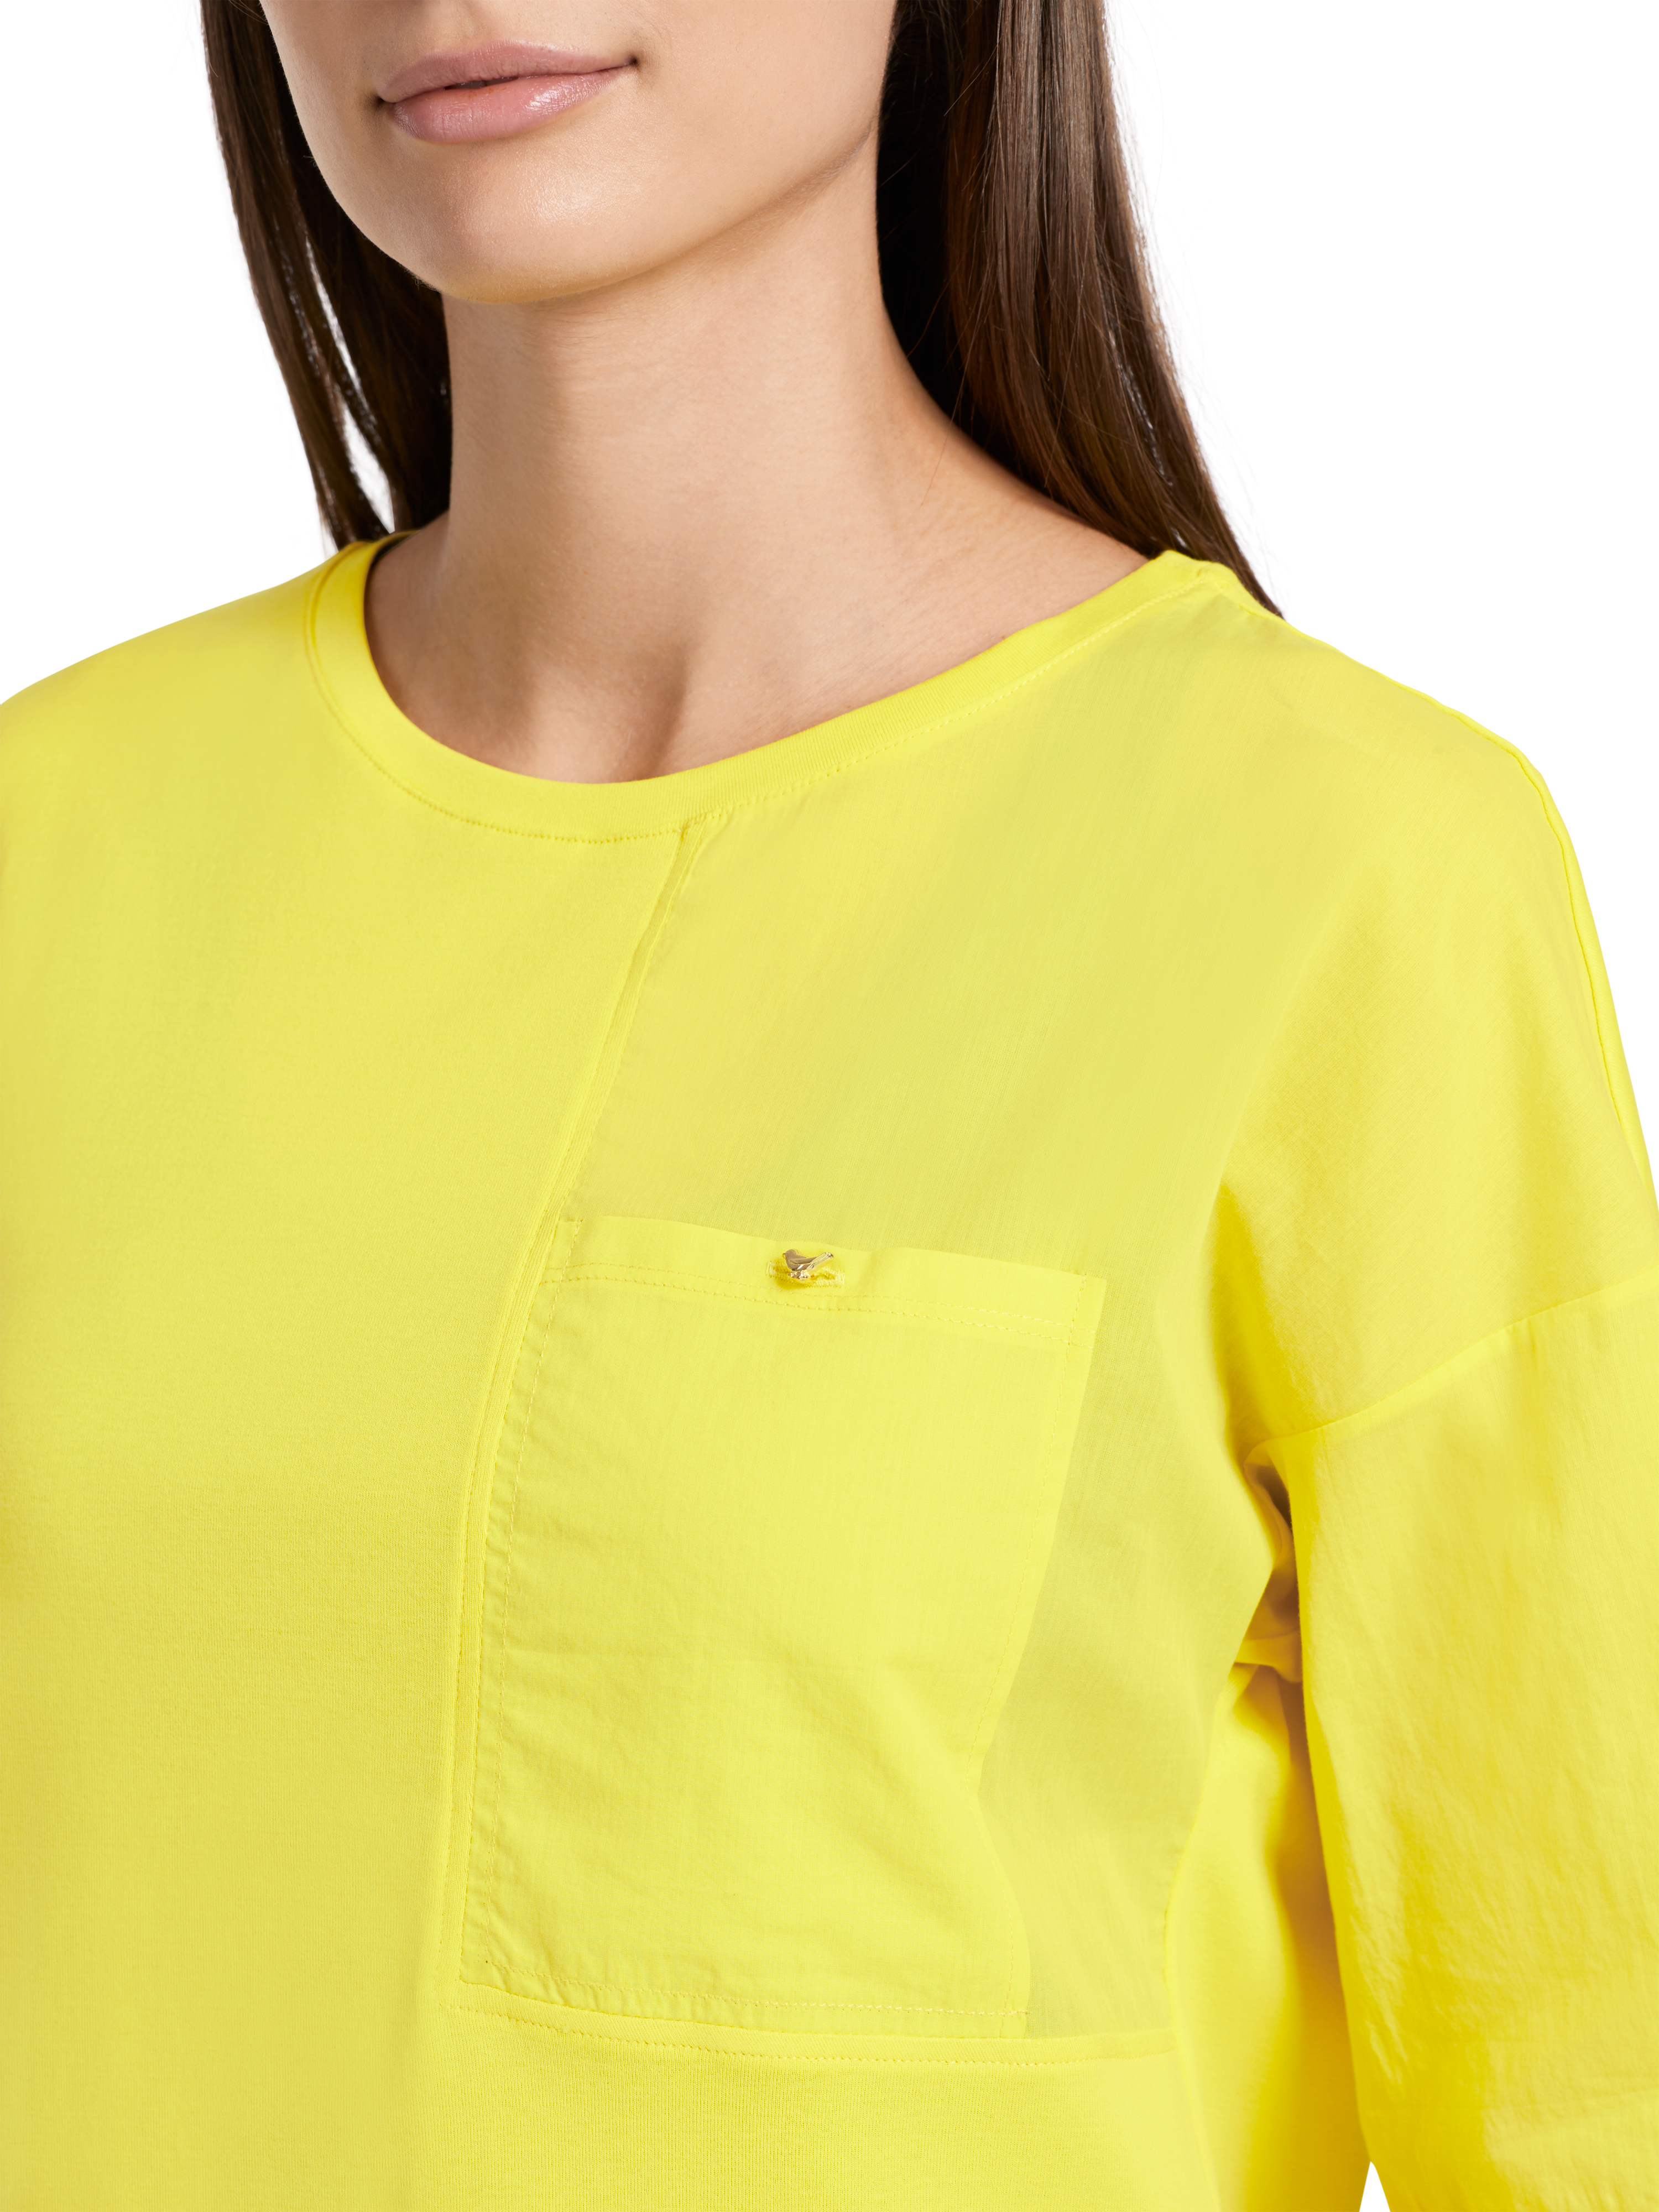 MARC CAIN VC 48.07 J14 T-Shirt mit Brusttasche soft lemon gelb 421